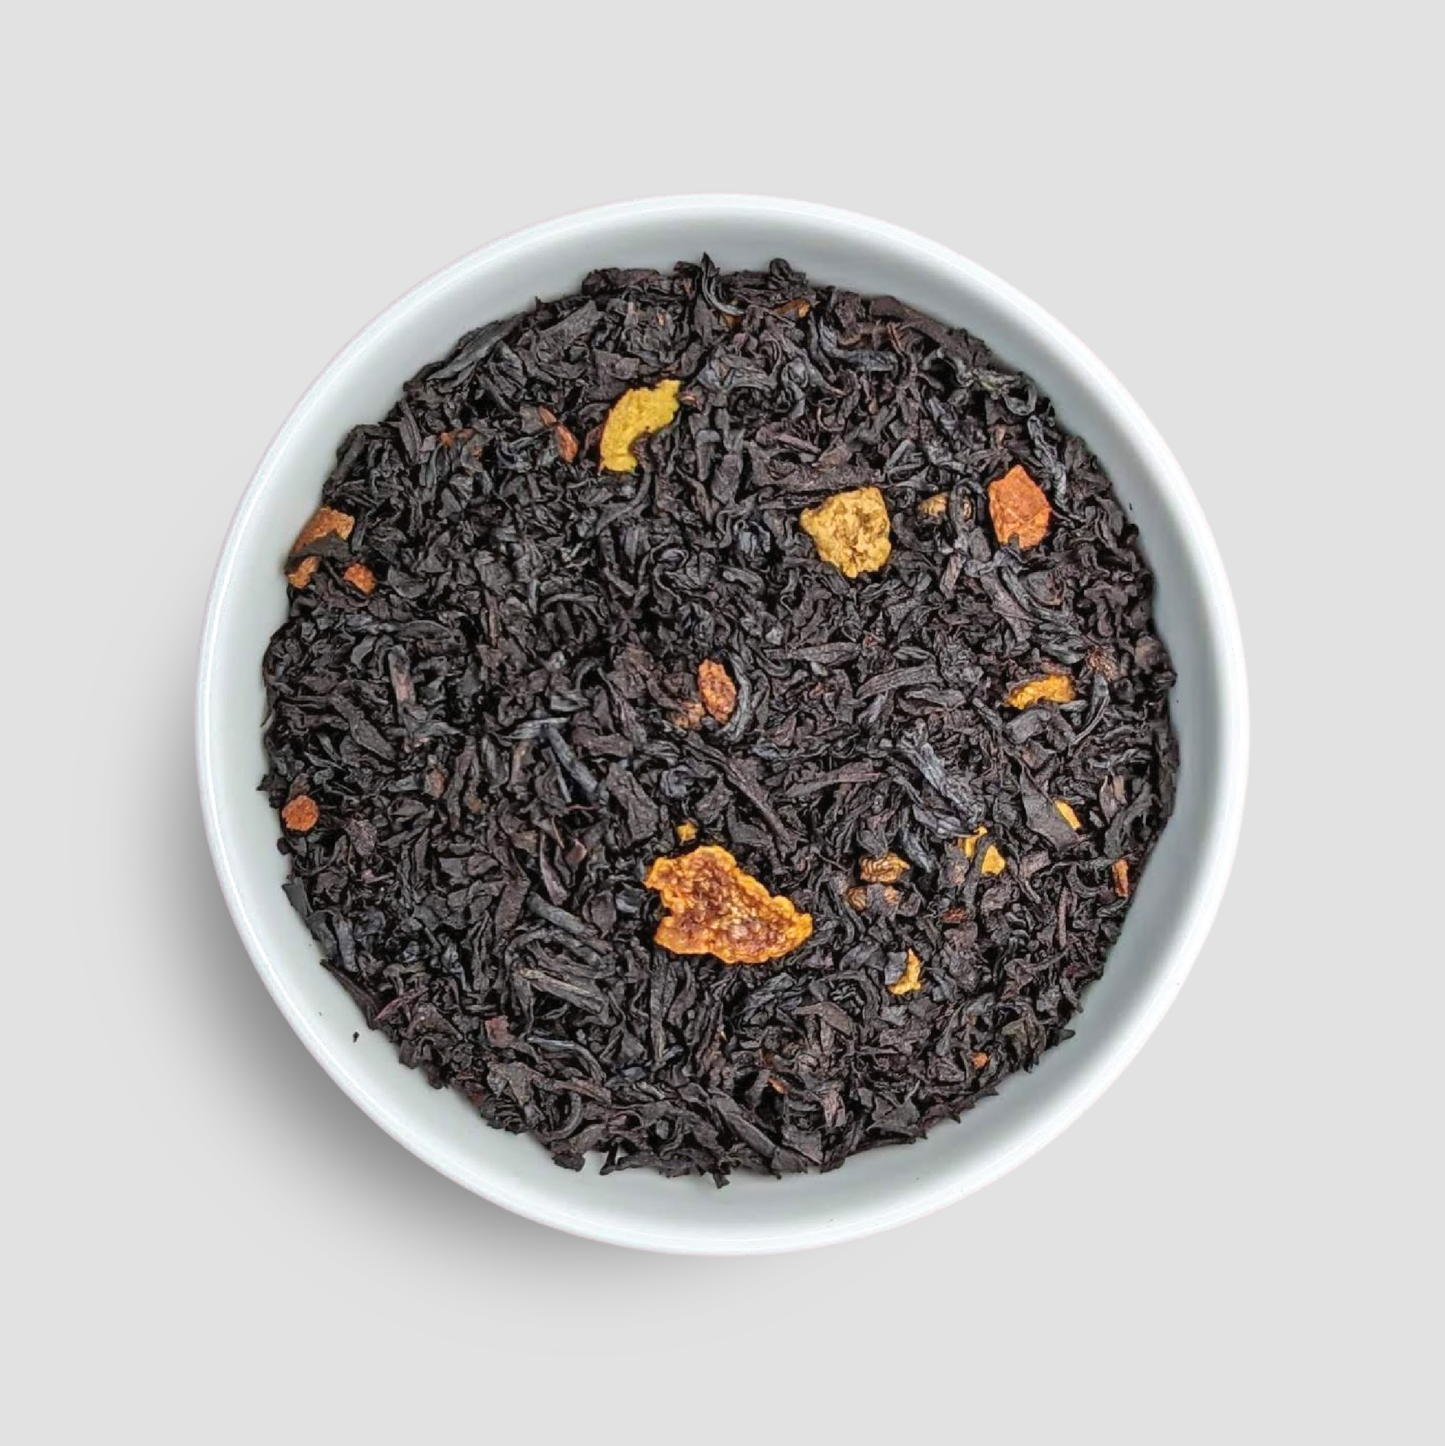 Christmas Black Tea - Loose Tea Blend with Cinnamon & Orange: Sample